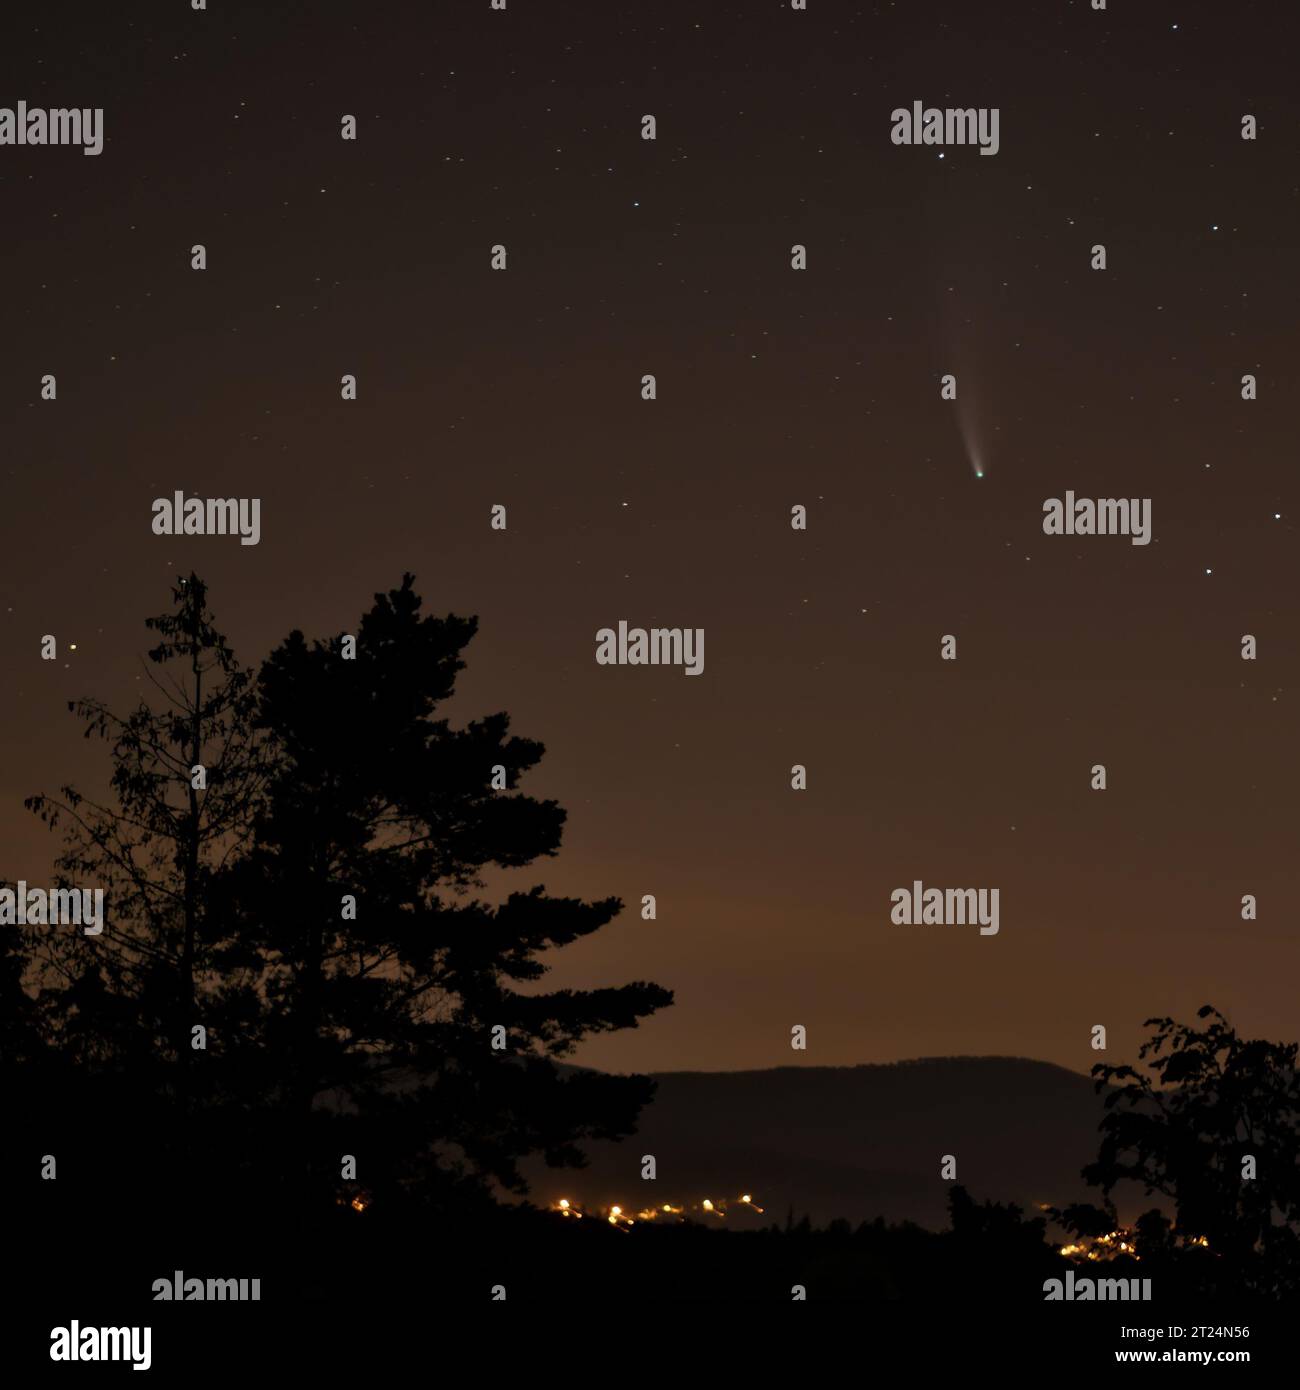 Cometa NevoISE e stelle nel cielo notturno. Fotografia notturna di paesaggi. Foto Stock